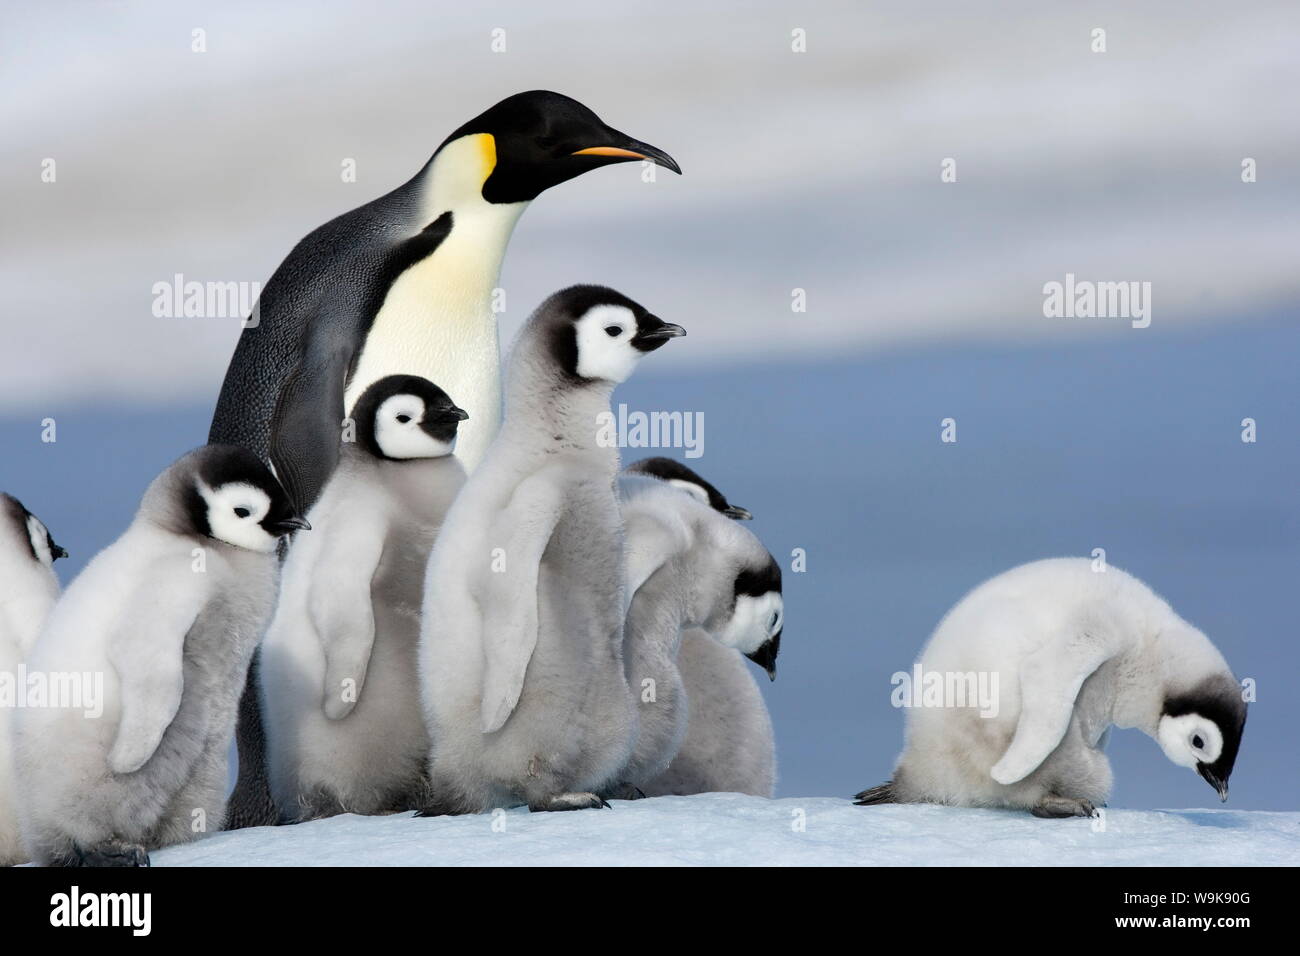 Emperor penguin (Aptenodytes forsteri) and chicks, Snow Hill Island, Weddell Sea, Antarctica, Polar Regions Stock Photo